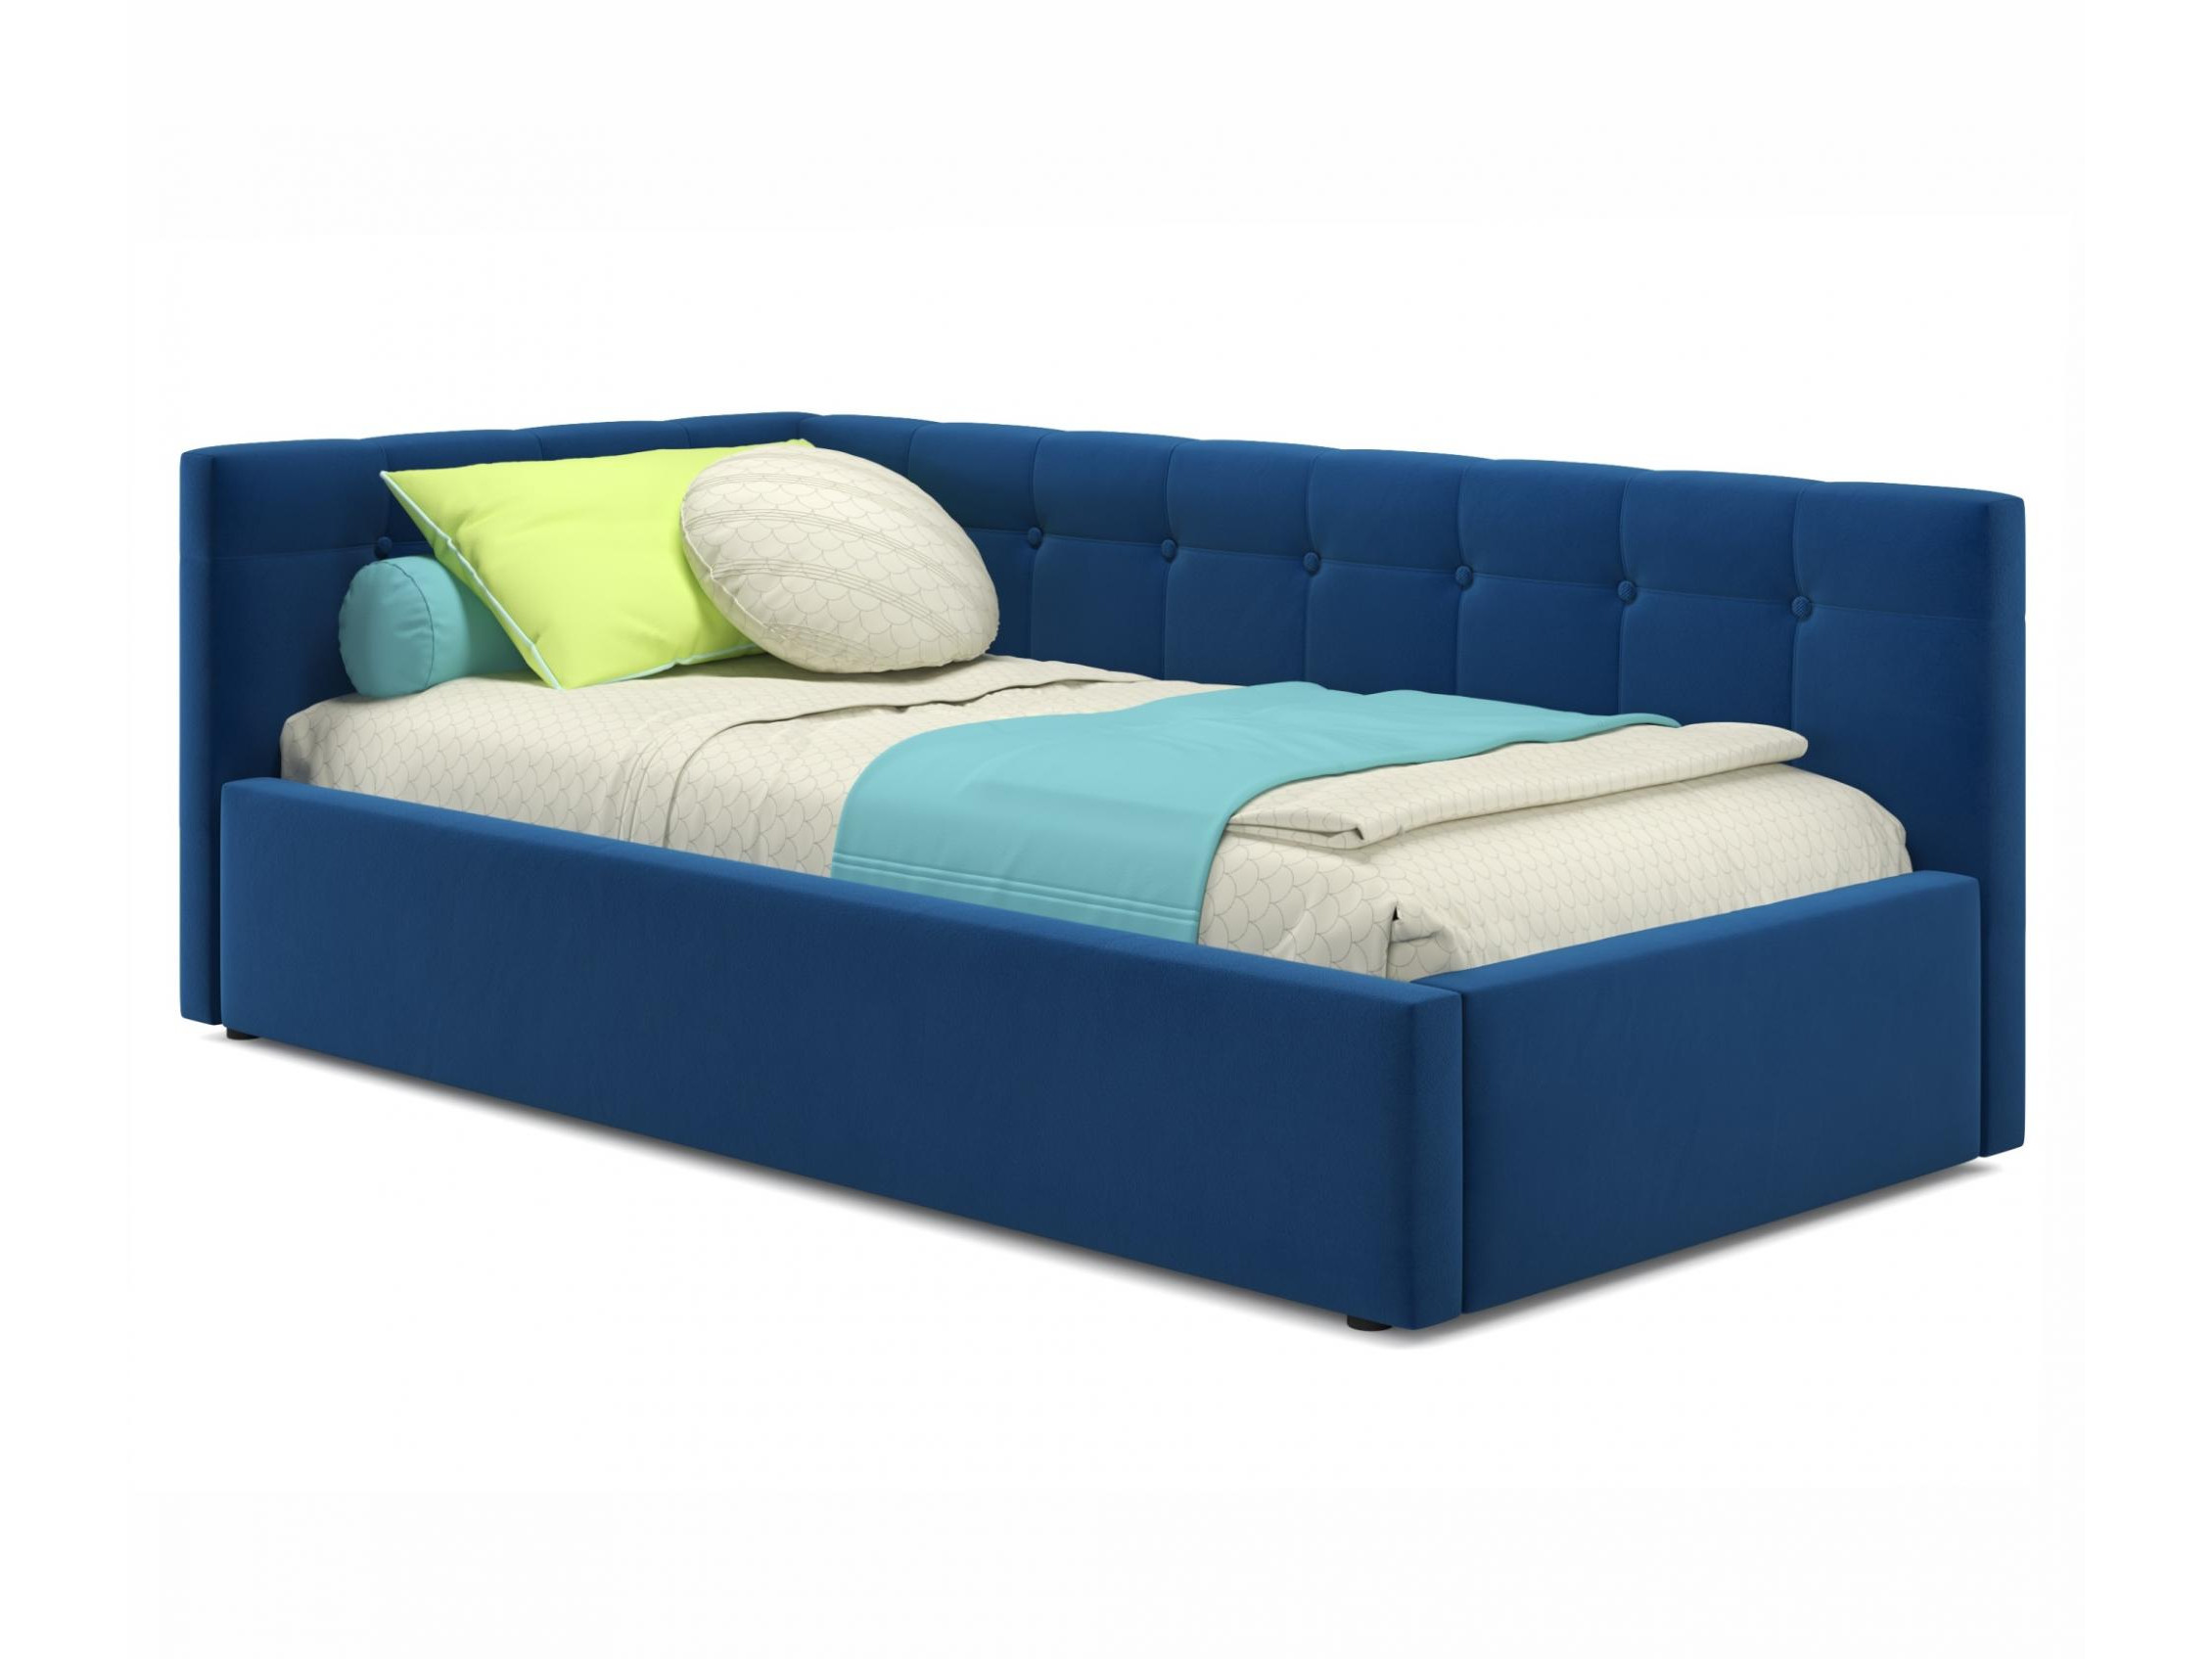 Односпальная кровать-тахта Bonna 900 синяя с подъемным механизмом и матрасом АСТРА синий, Синий, Велюр, ДСП